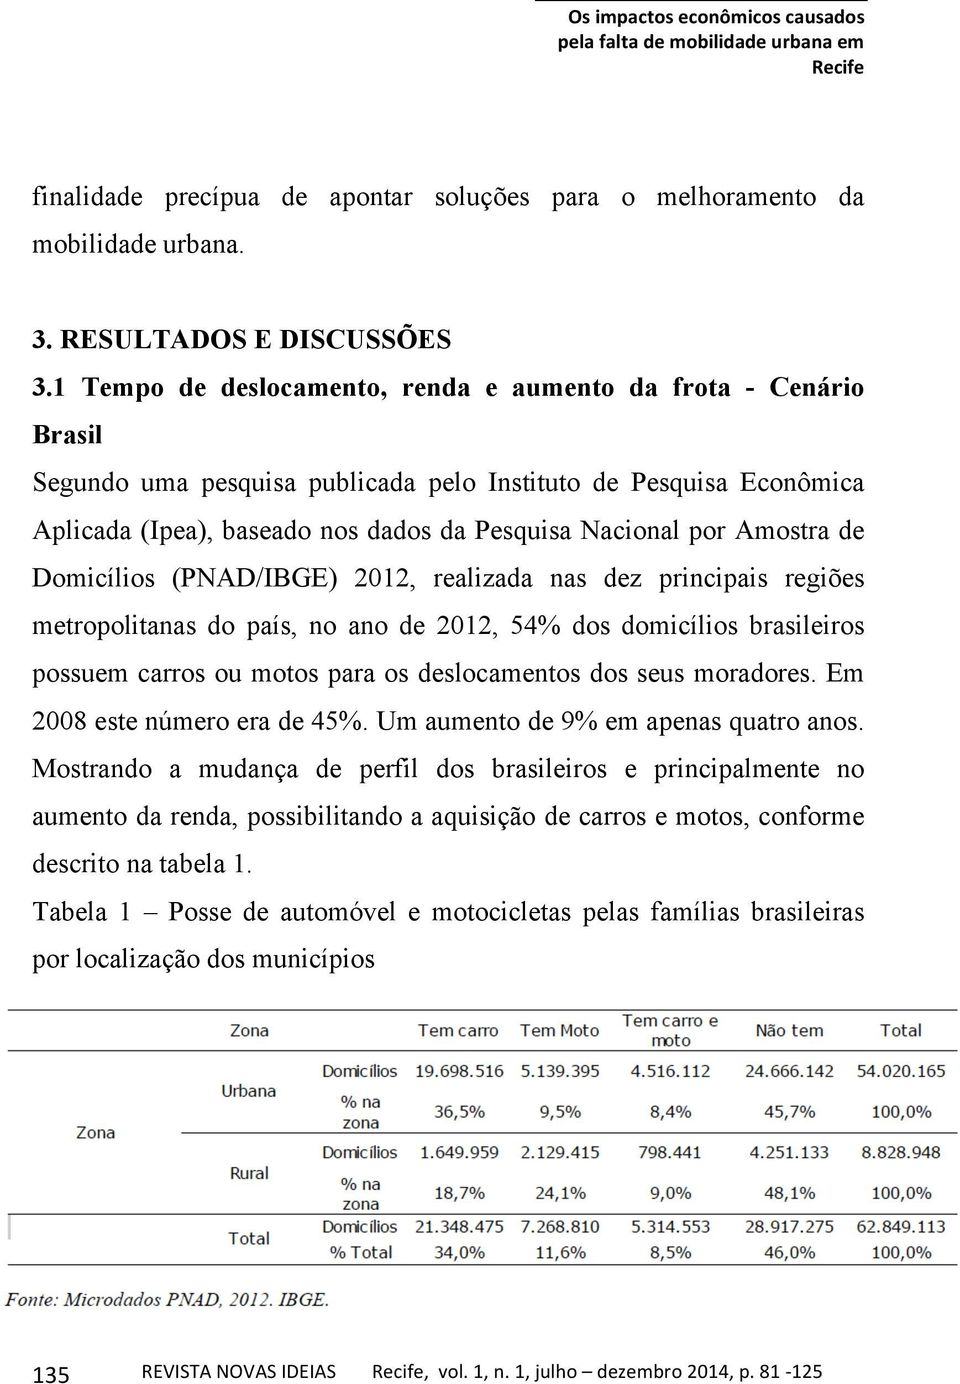 Amostra de Domicílios (PNAD/IBGE) 2012, realizada nas dez principais regiões metropolitanas do país, no ano de 2012, 54% dos domicílios brasileiros possuem carros ou motos para os deslocamentos dos